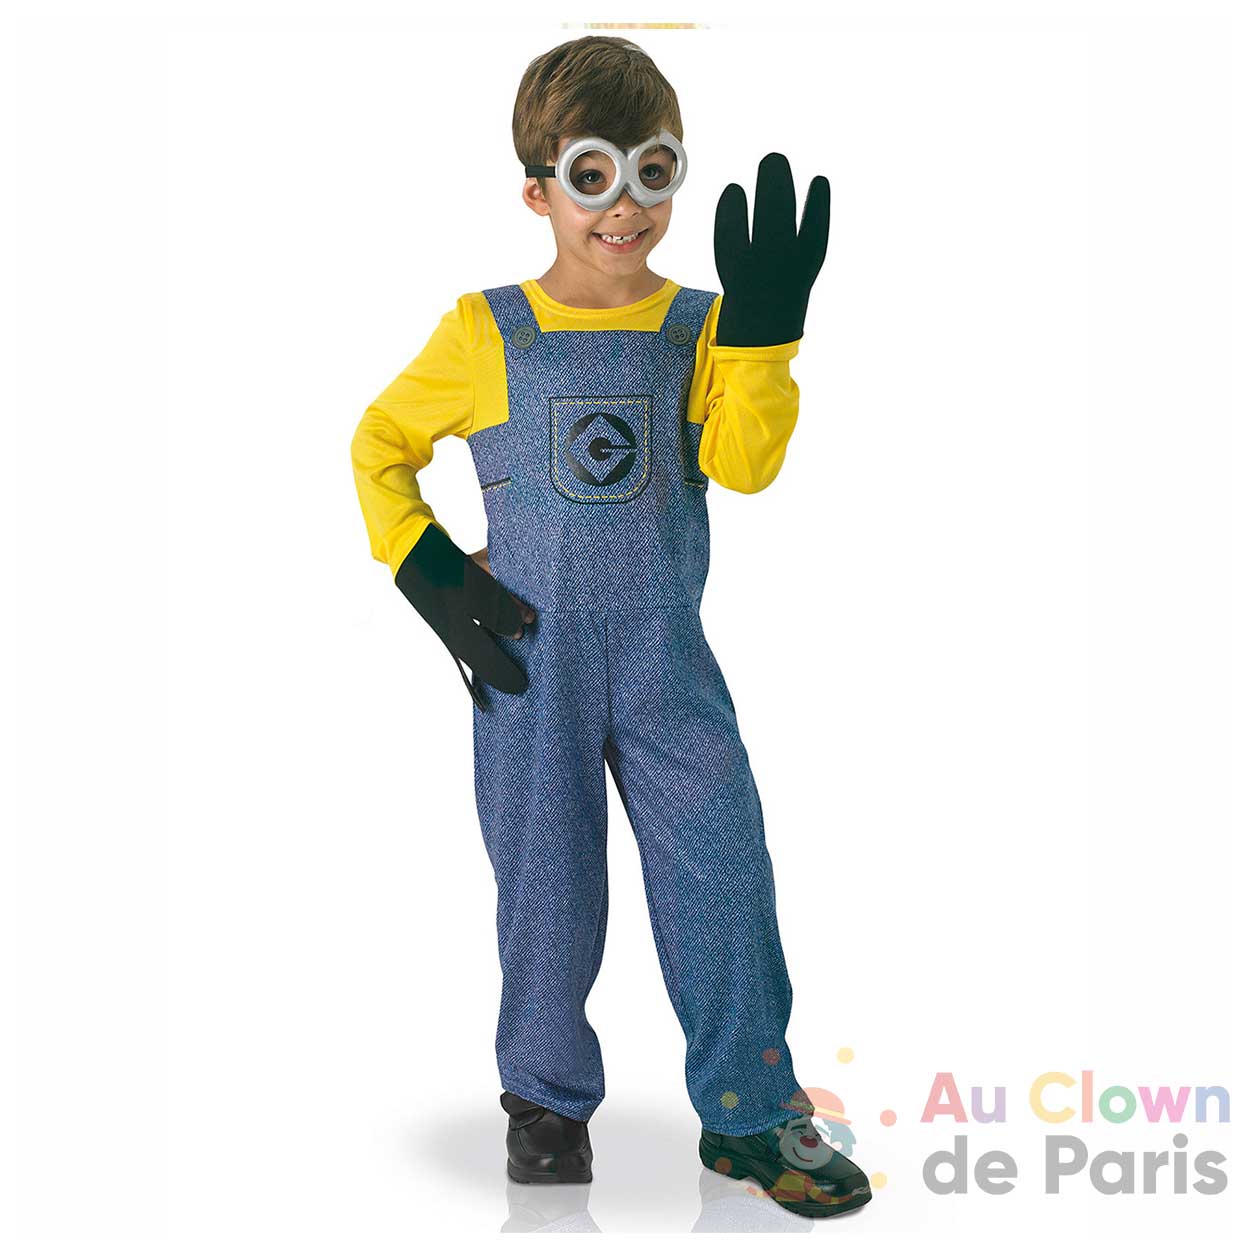 Déguisement Minion - Au Clown de Paris